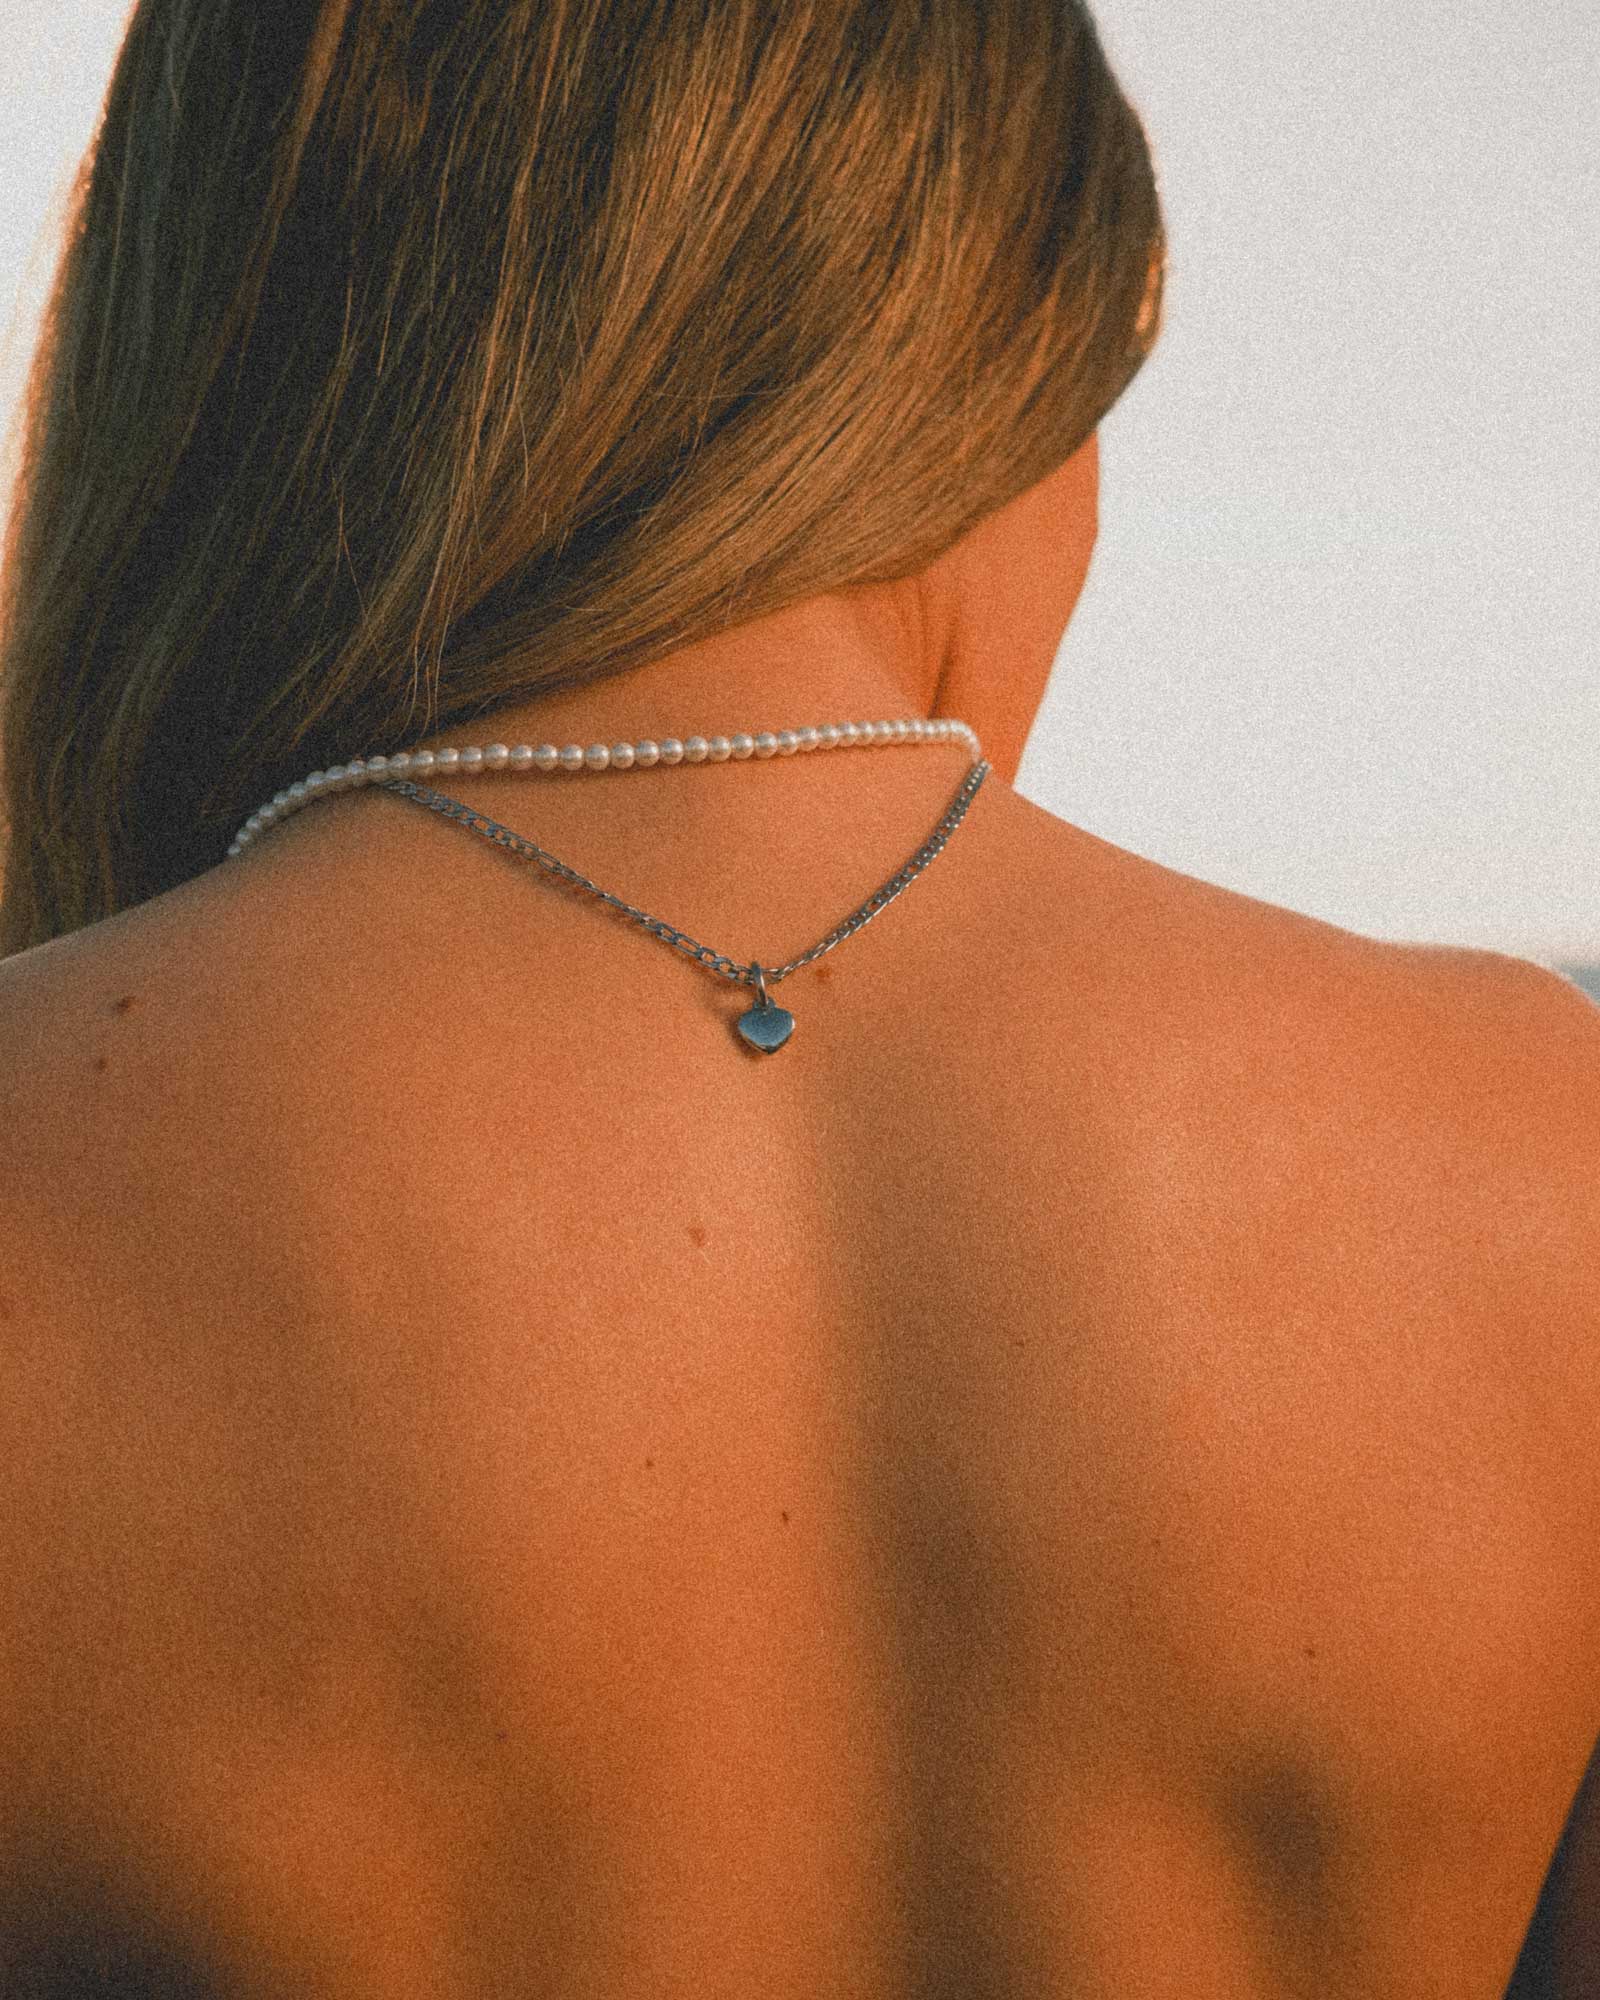 Heart - Collar de Acero Inoxidable en el cuello de la modelo - Joyería Unisexo Online - Dicci